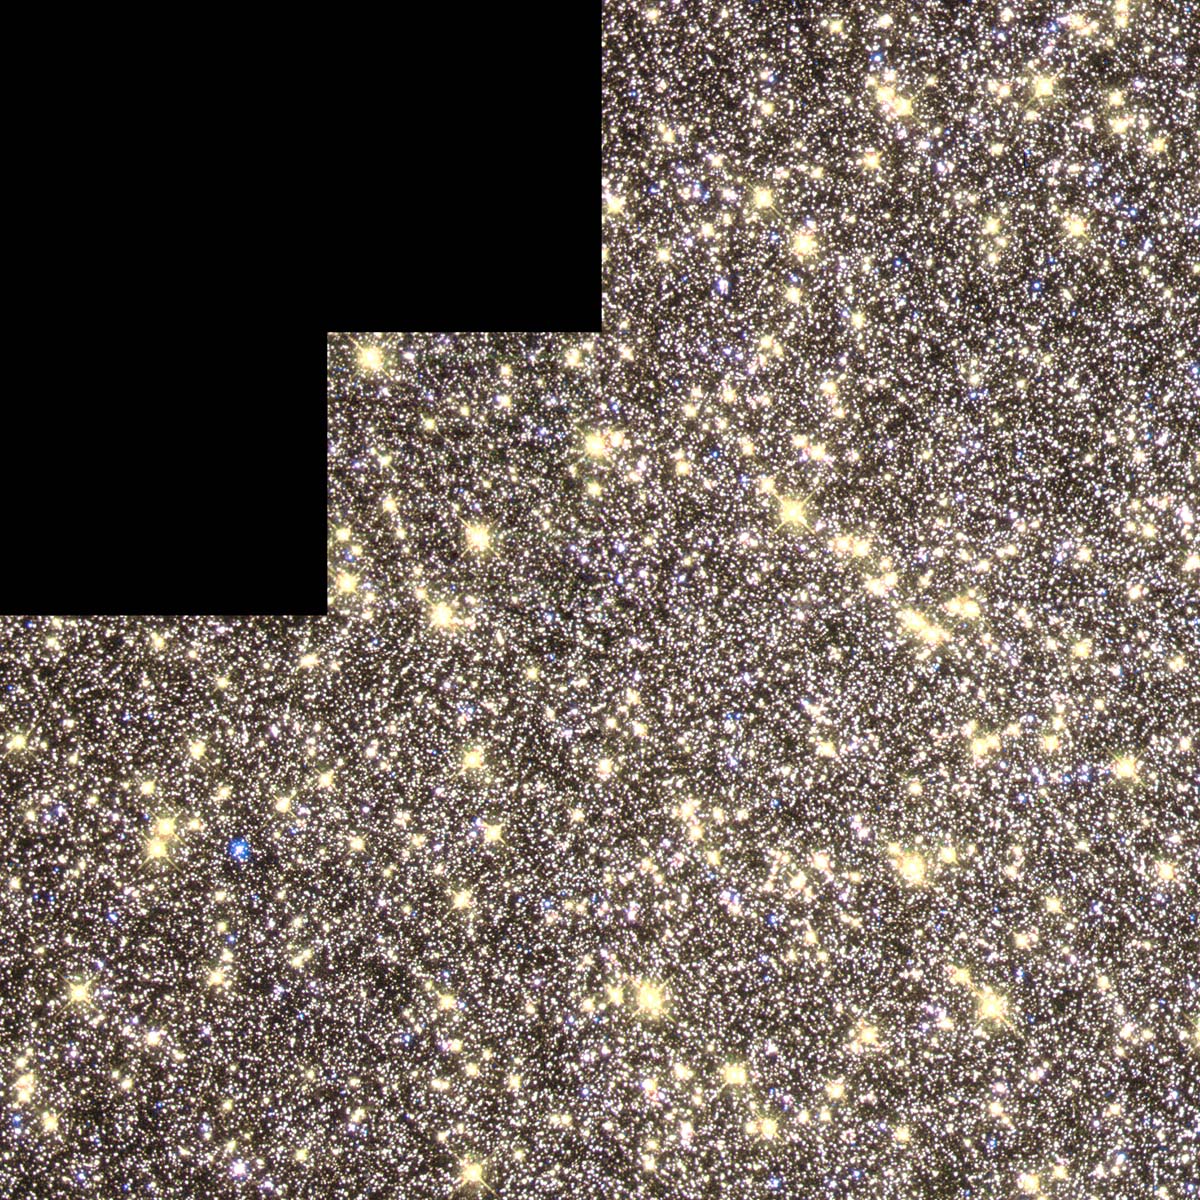 june-11-2019-star-cluster-omega-centauri.jpg